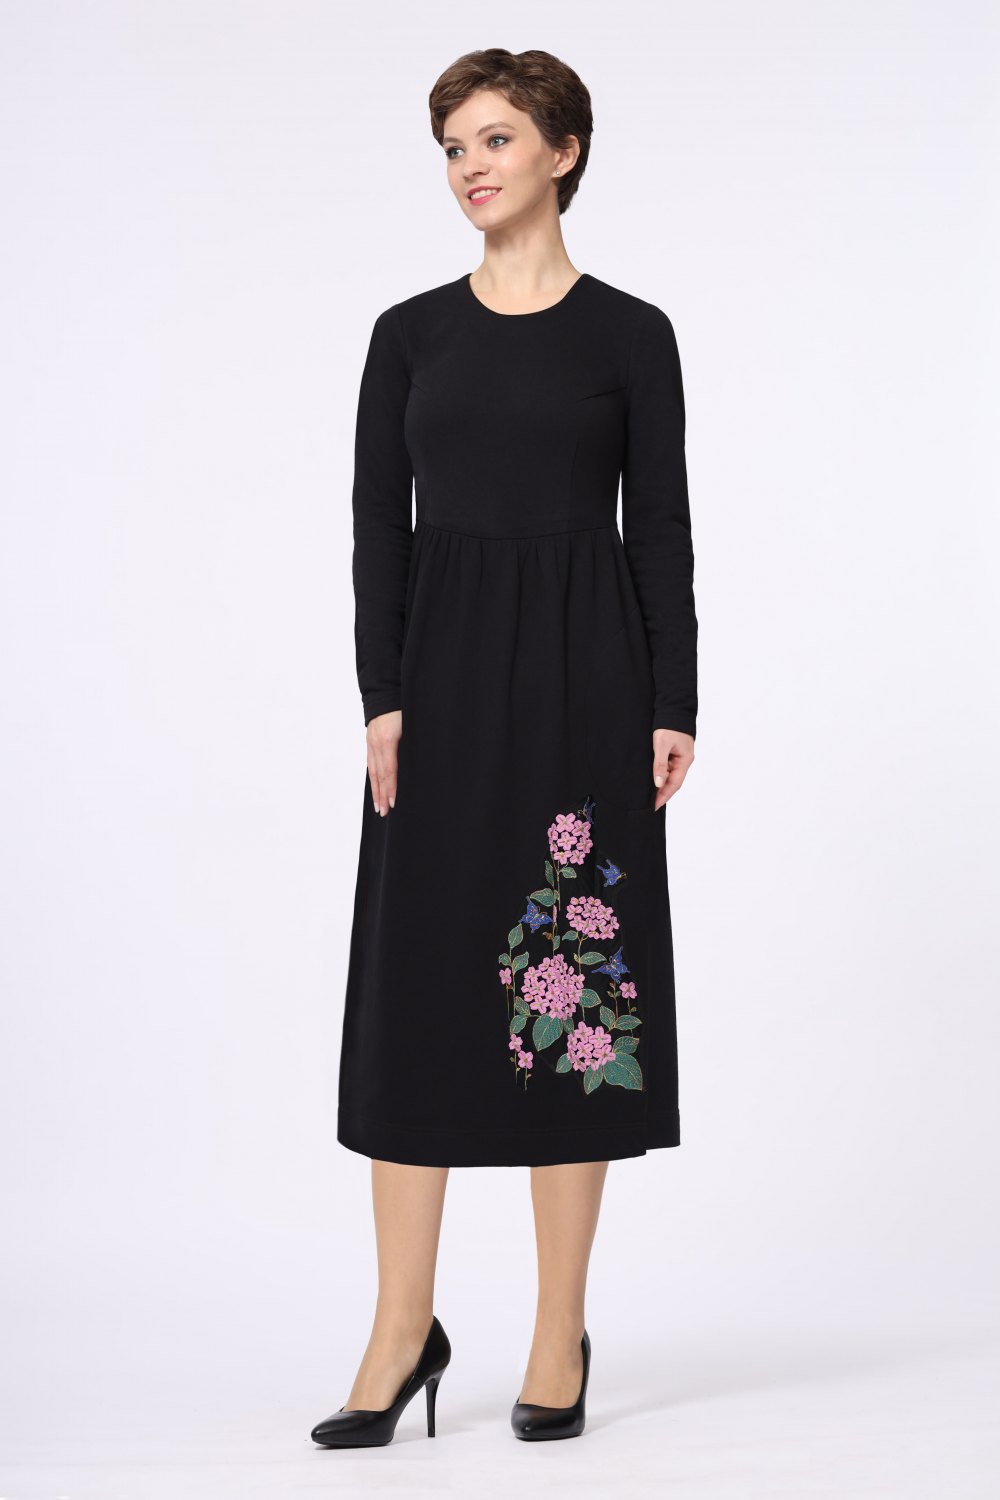 Платье женское "Эдельвейс" декор цветы, модель 640/1 цвет: черный